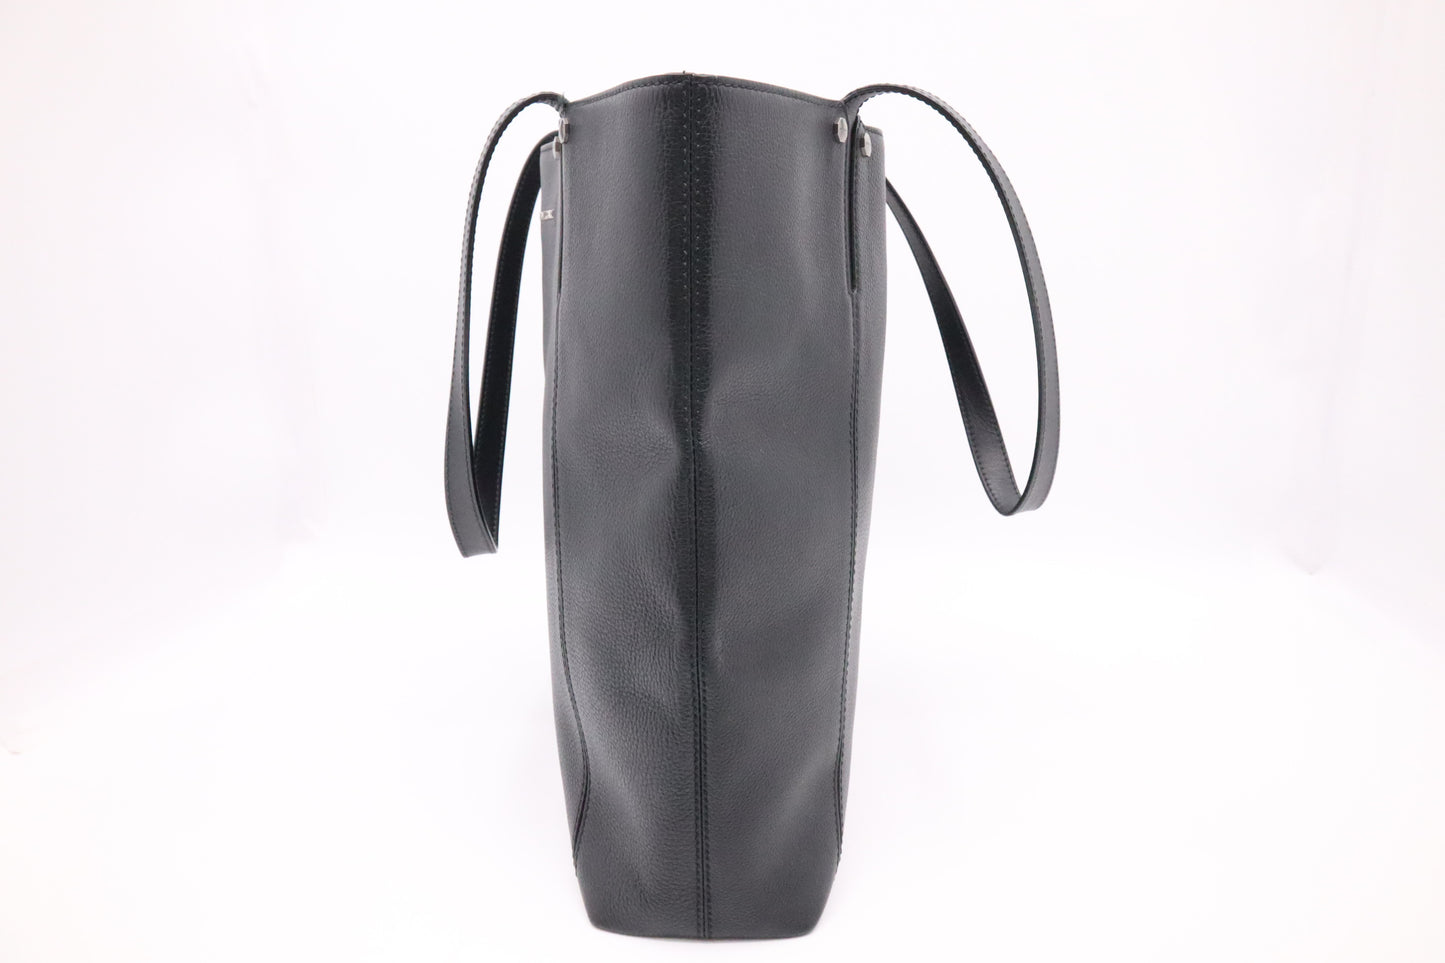 Bvlgari Tote Bag in Black Leather